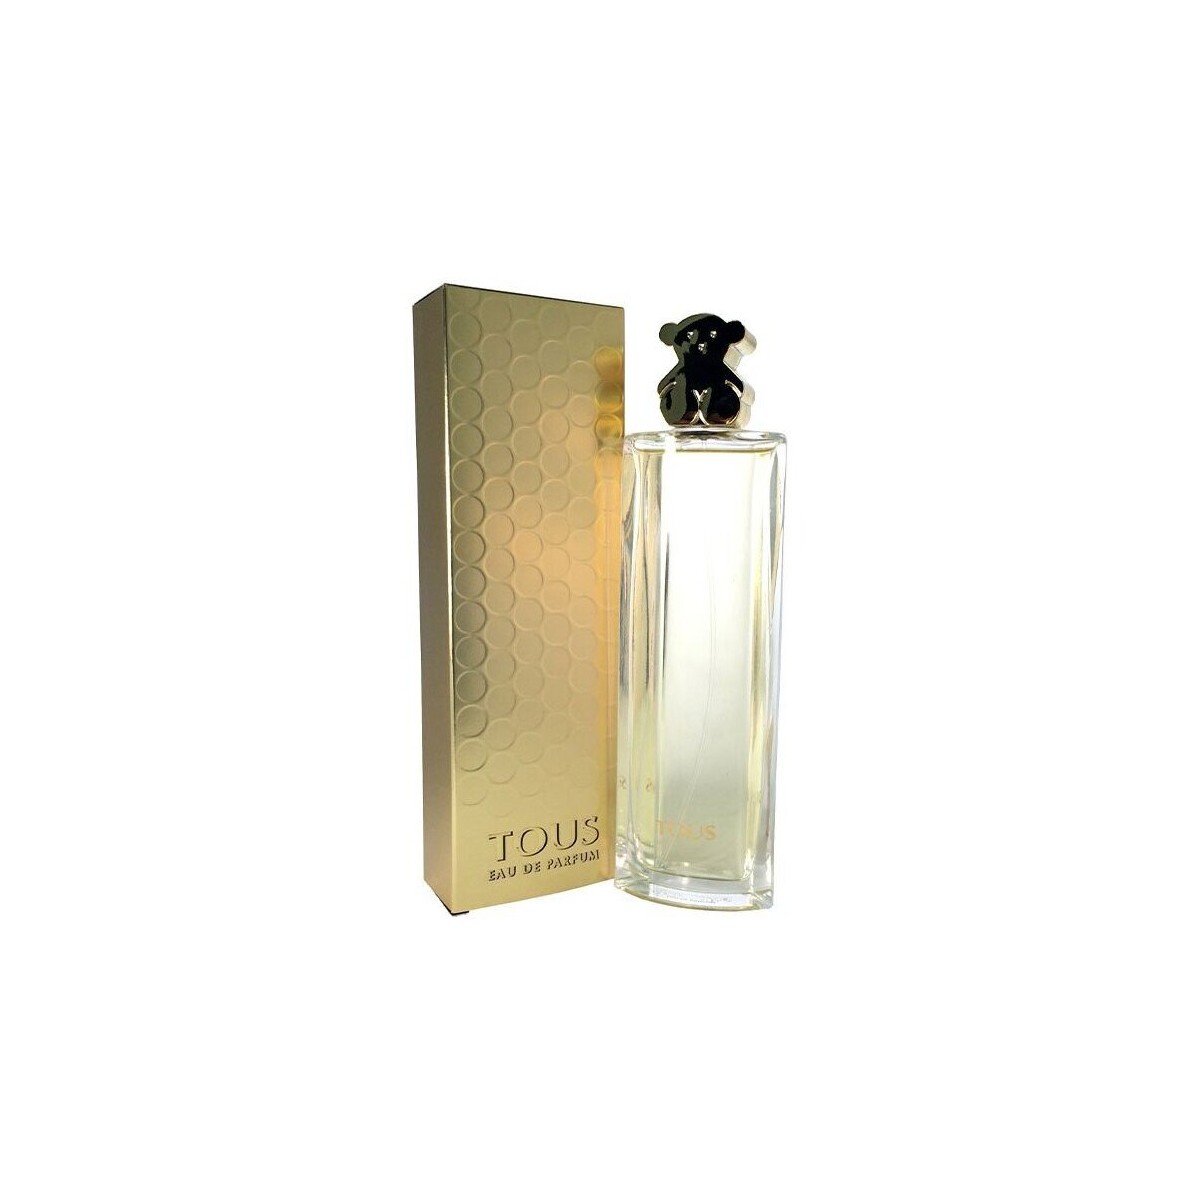 Belleza Mujer Perfume TOUS Gold - Eau de Parfum - 90ml - Vaporizador Gold - perfume - 90ml - spray